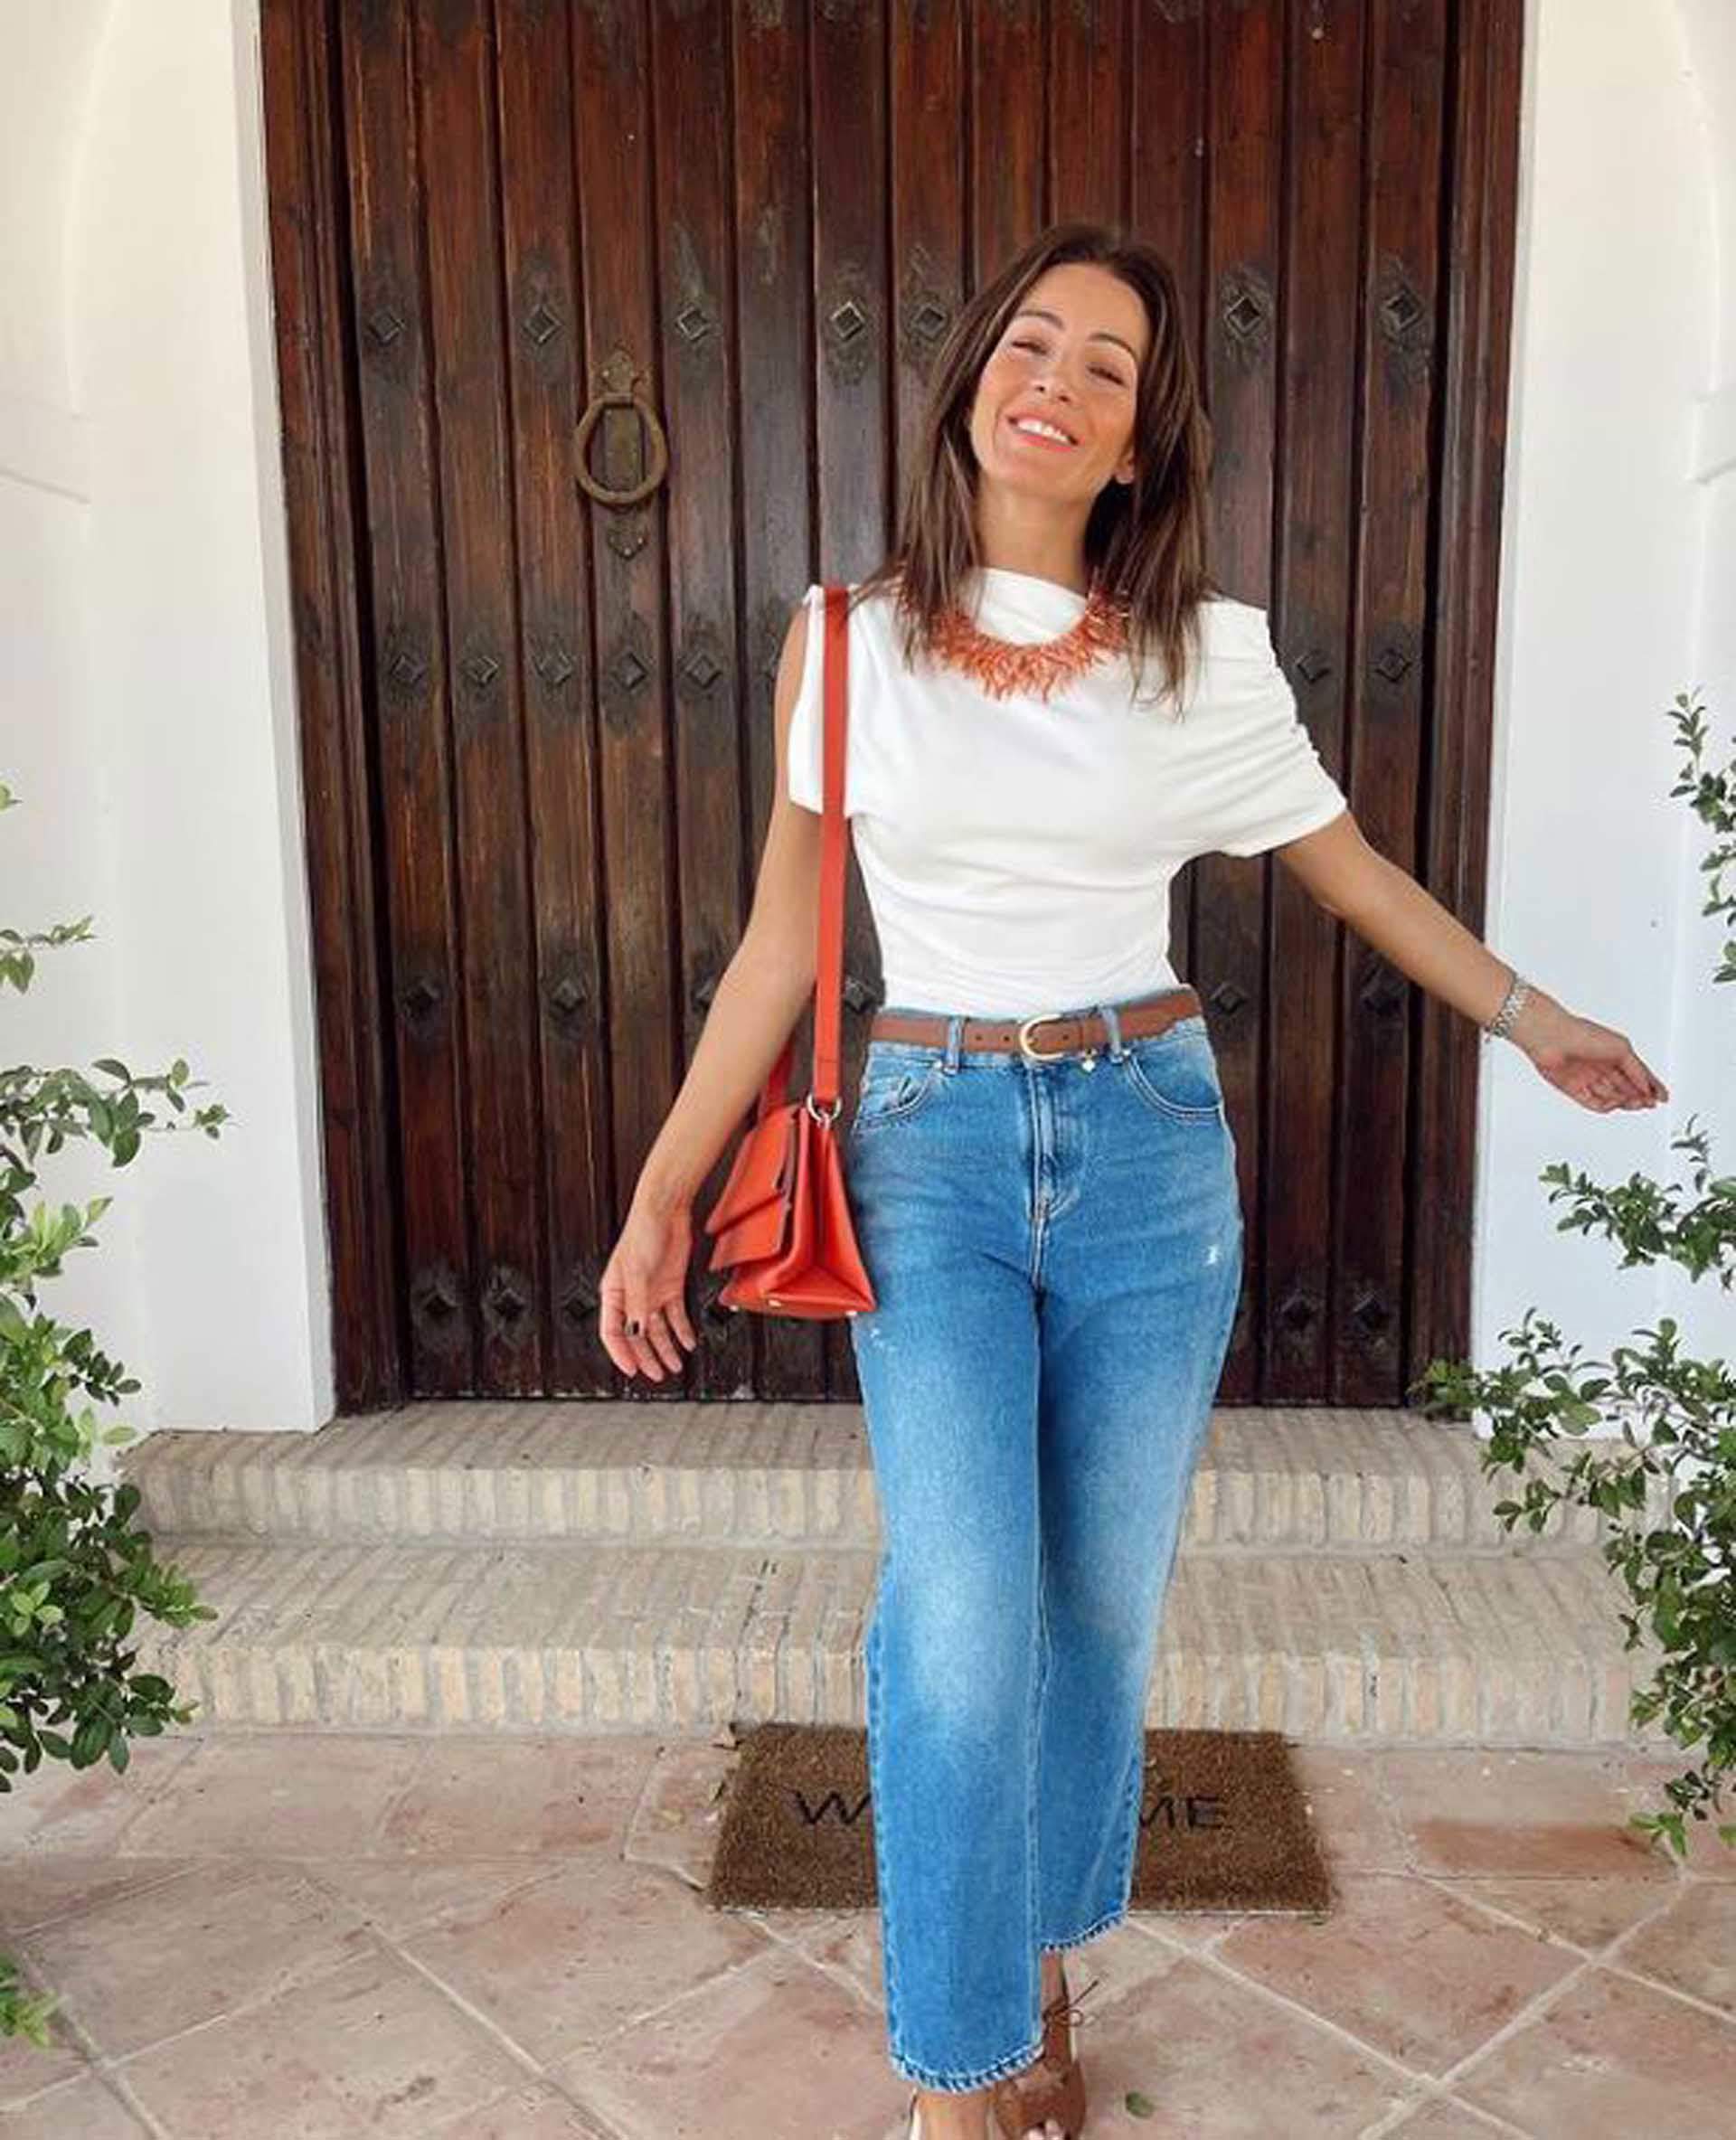 La puerta de la casa de Virginia Troconis en Sevilla